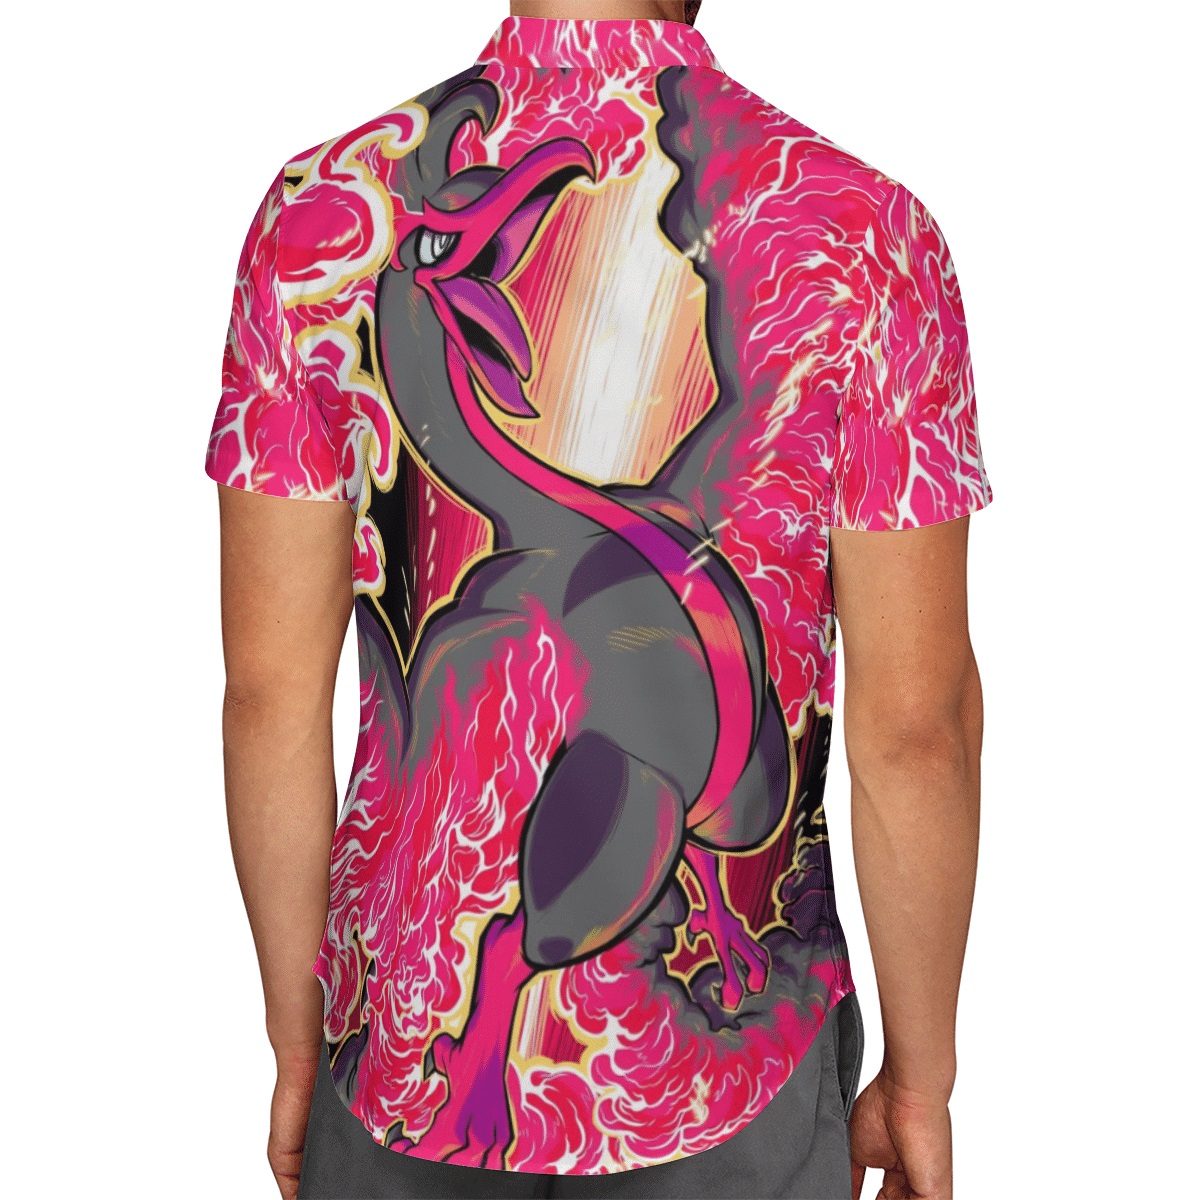 Ho-oh pokemon hawaiian shirt - Picture 2